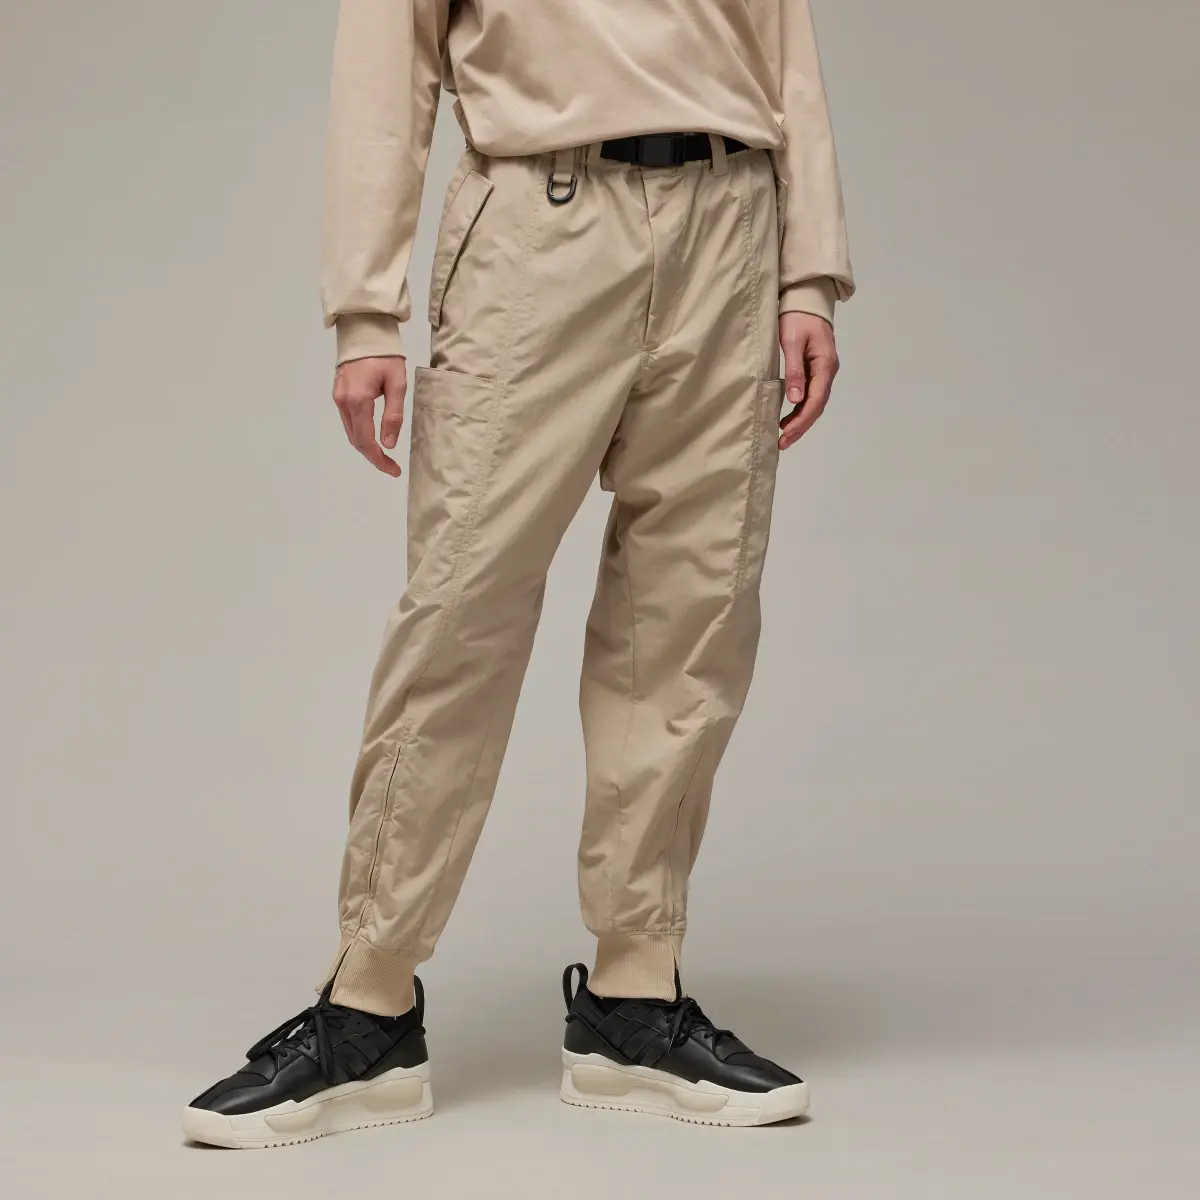 Adidas Y-3 Crinkle Nylon Cuffed Pants. 1